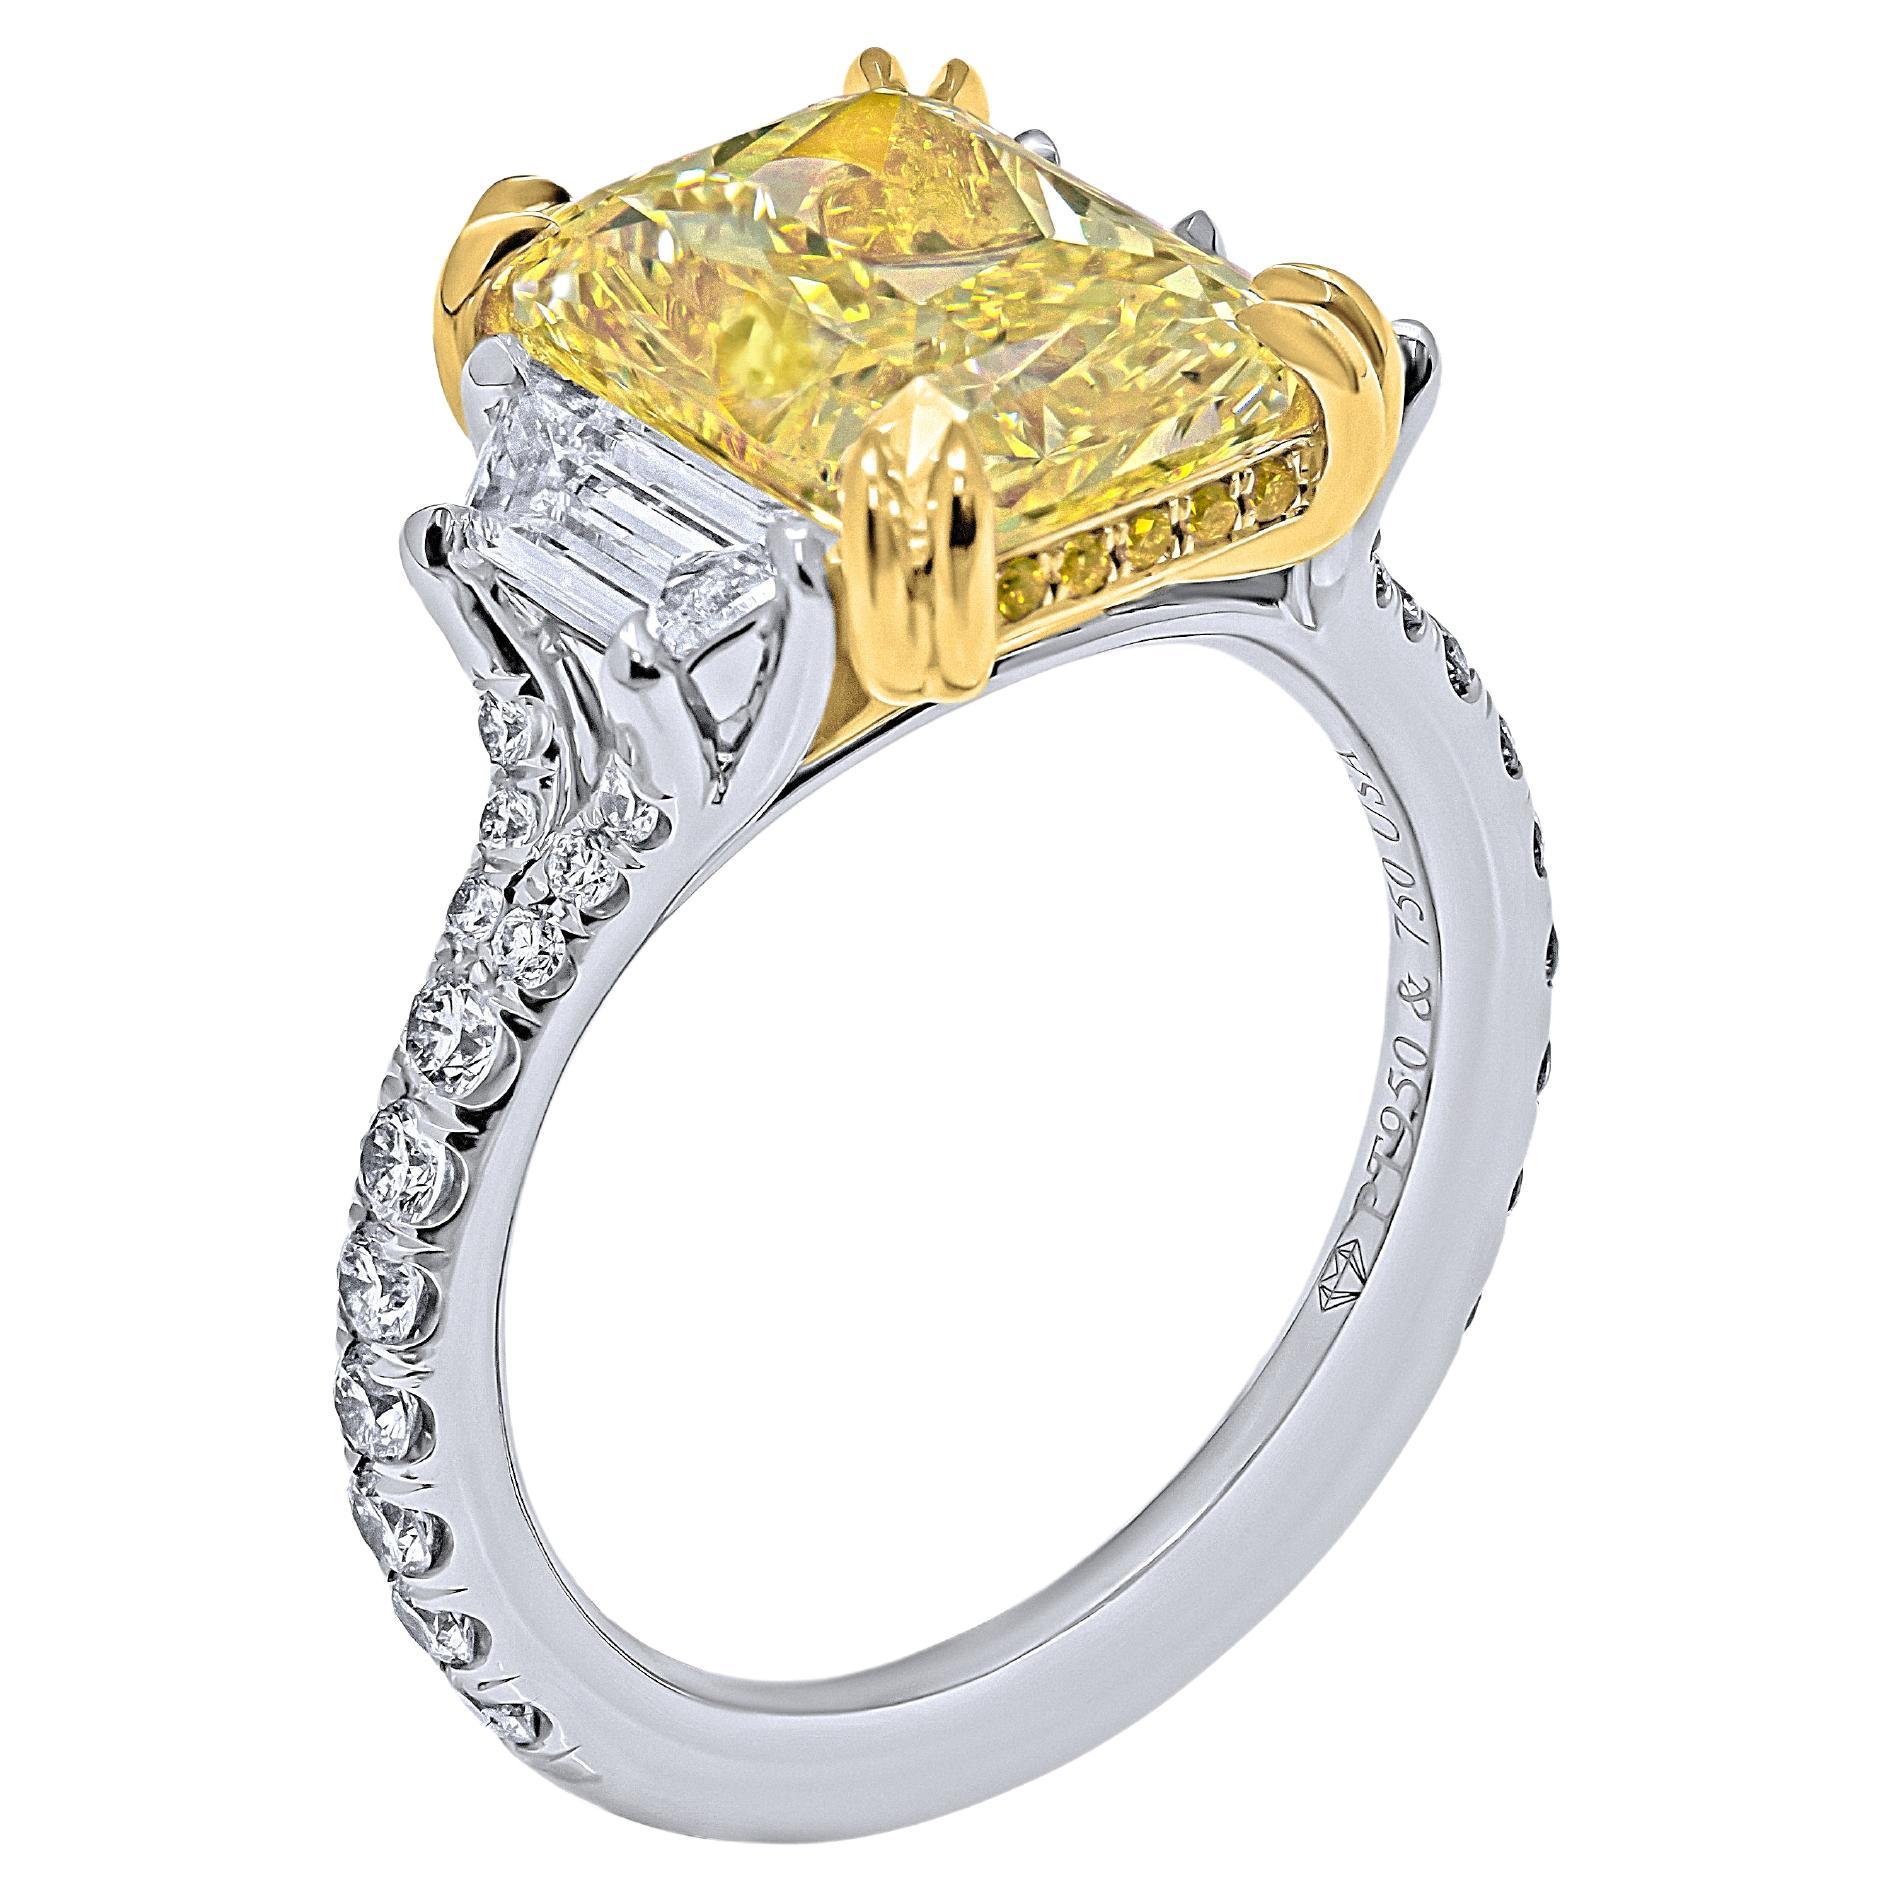 Bague à 3 pierres fantaisie jaune intense taille radiant de 5,02 carats certifiée par le GIA